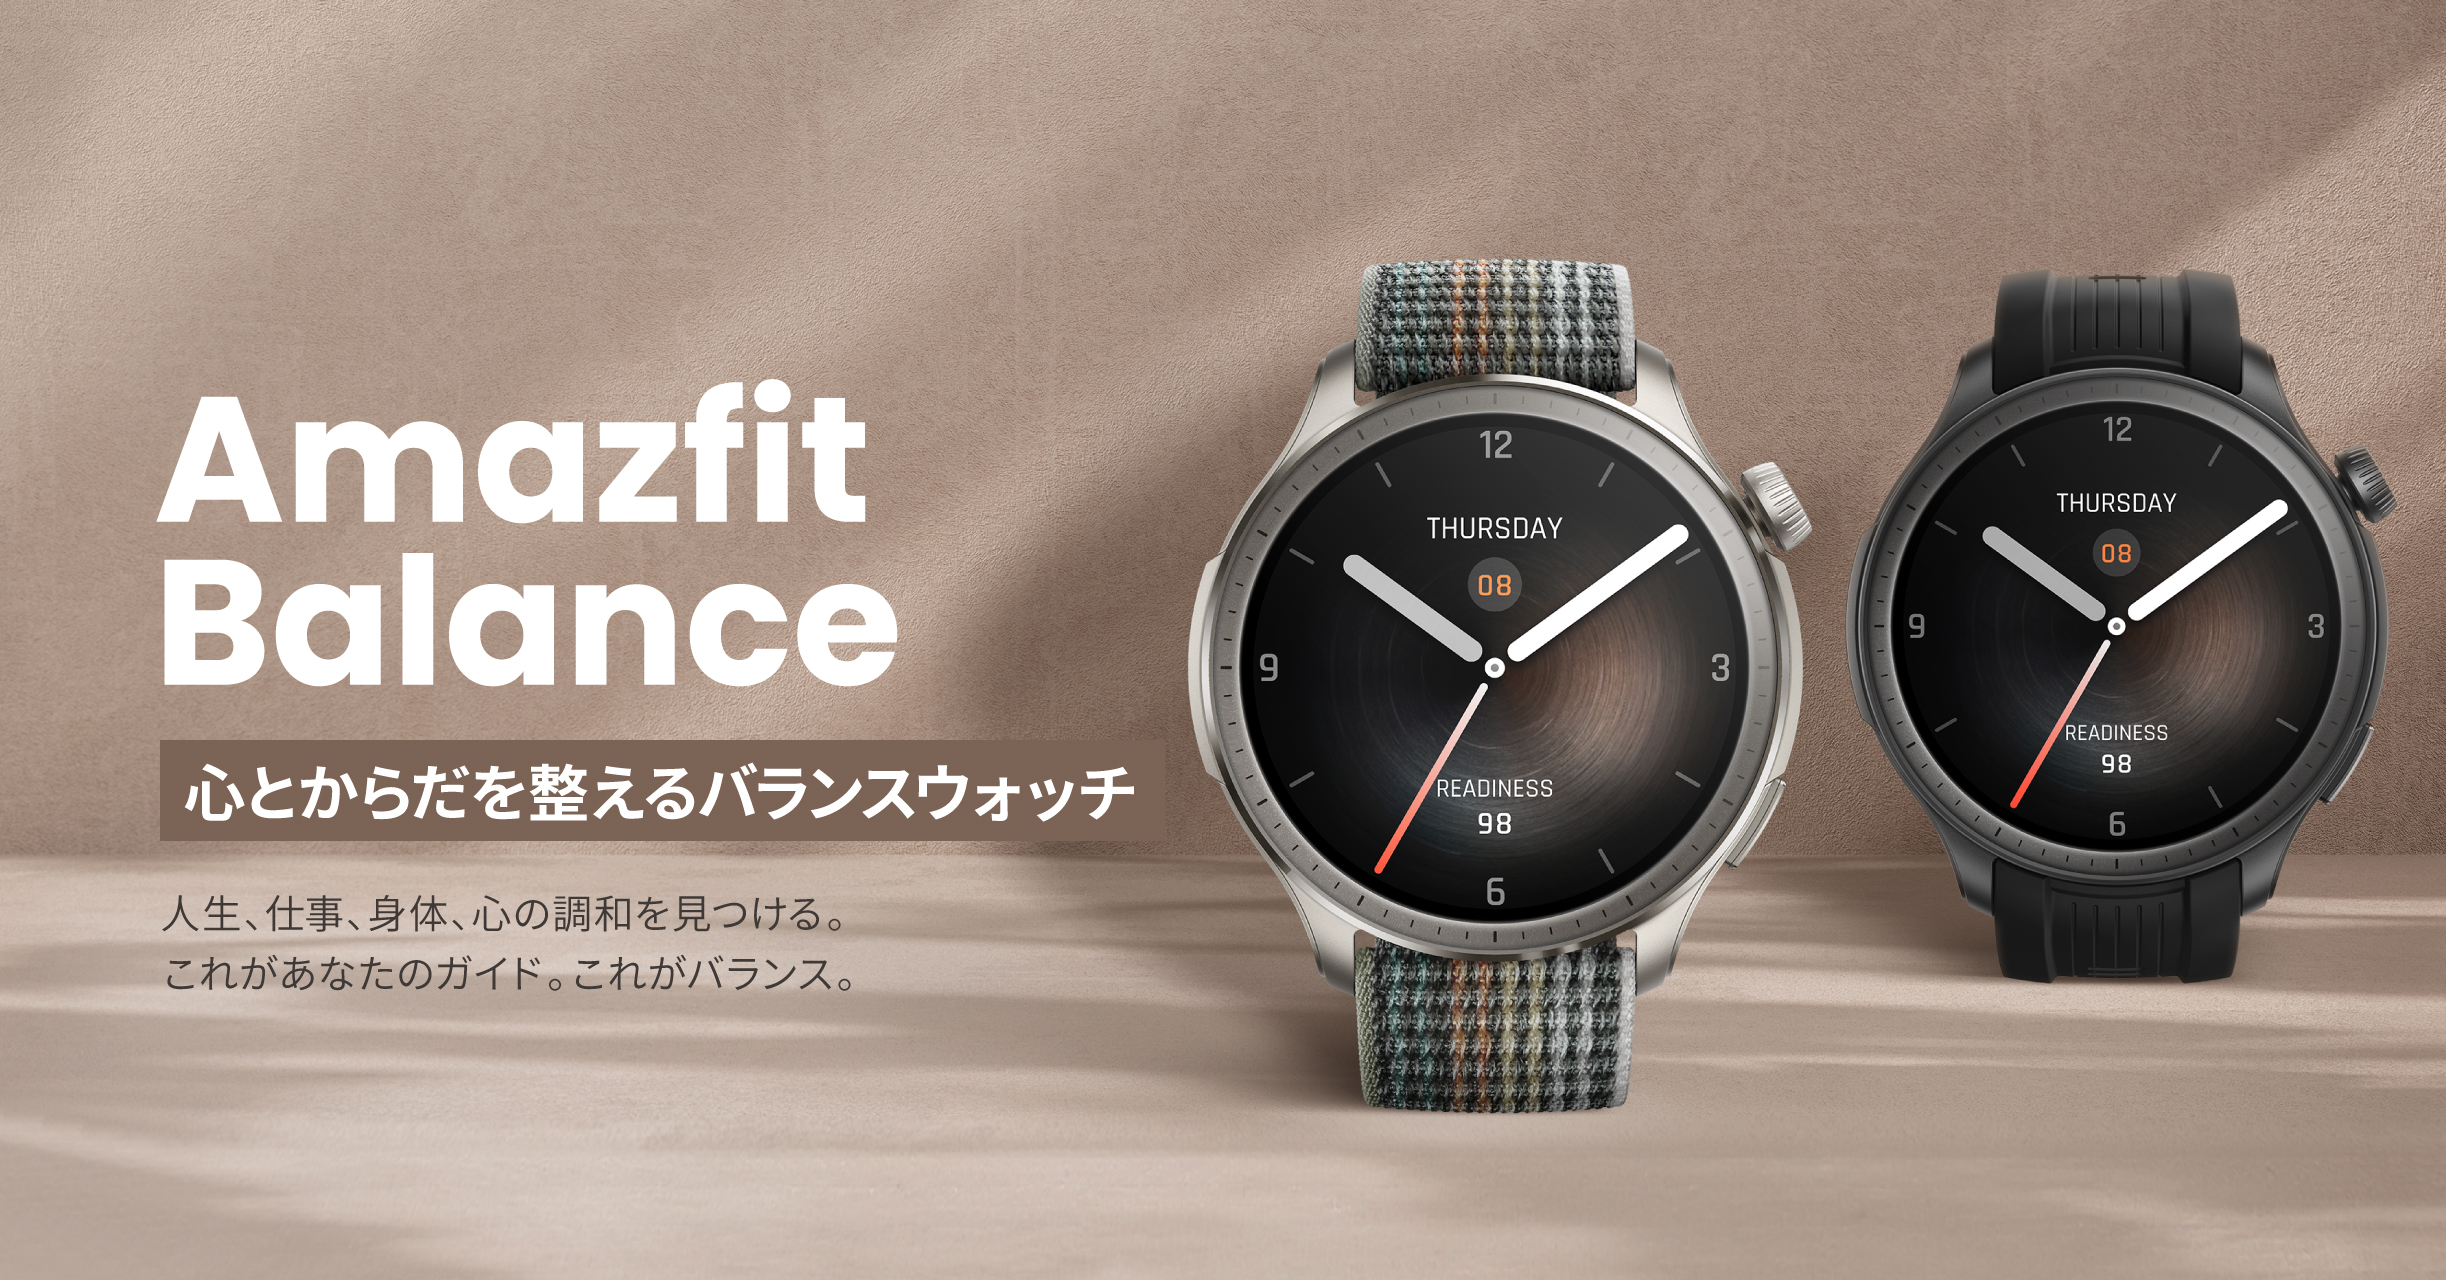 「Amazfit Balance」発売、“心とからだを整える”スマートウォッチ